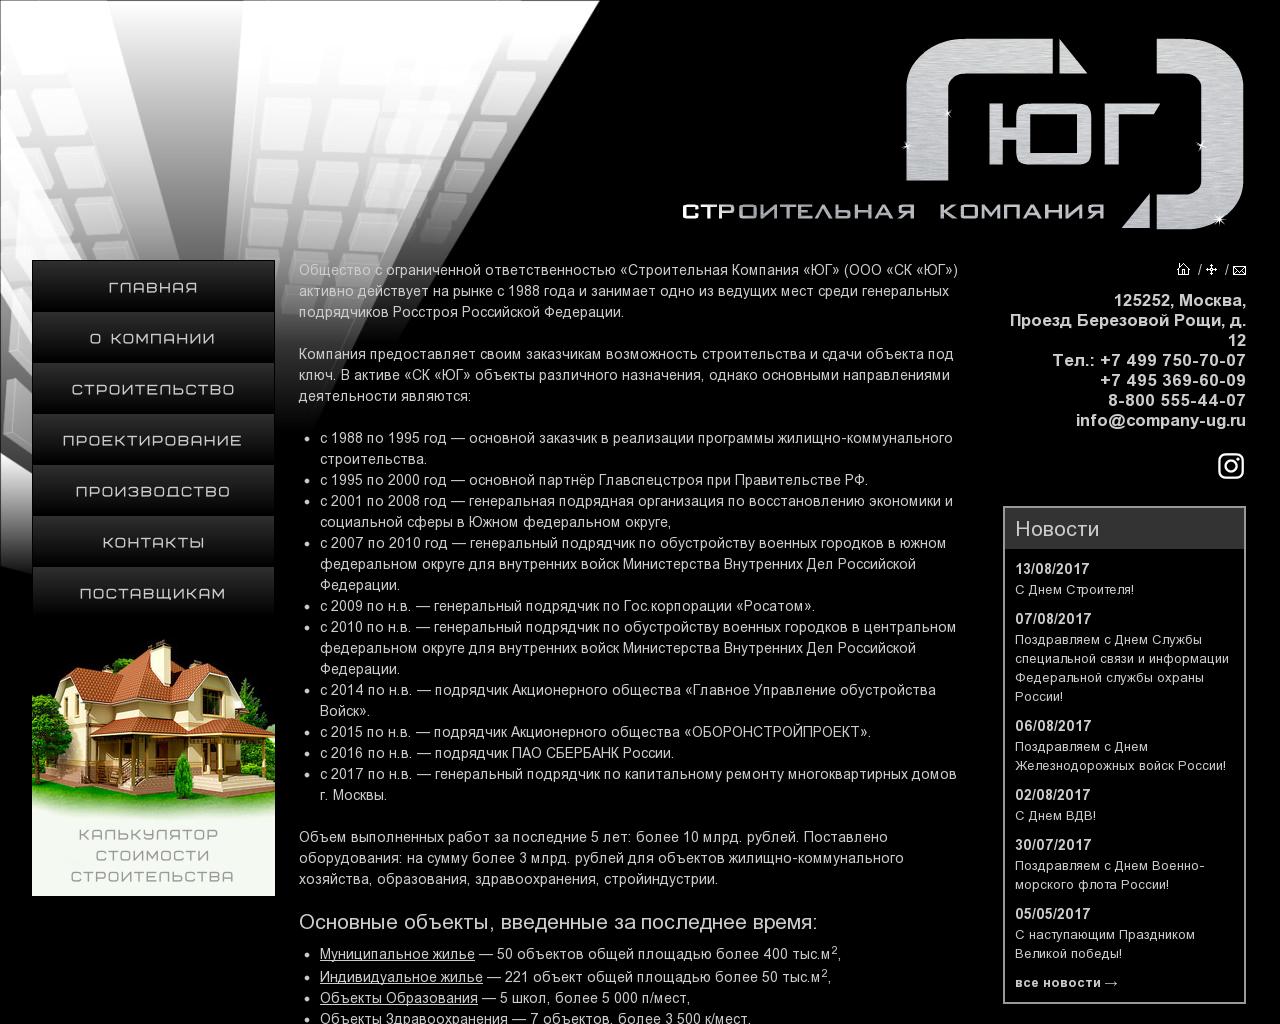 Изображение сайта company-ug.ru в разрешении 1280x1024